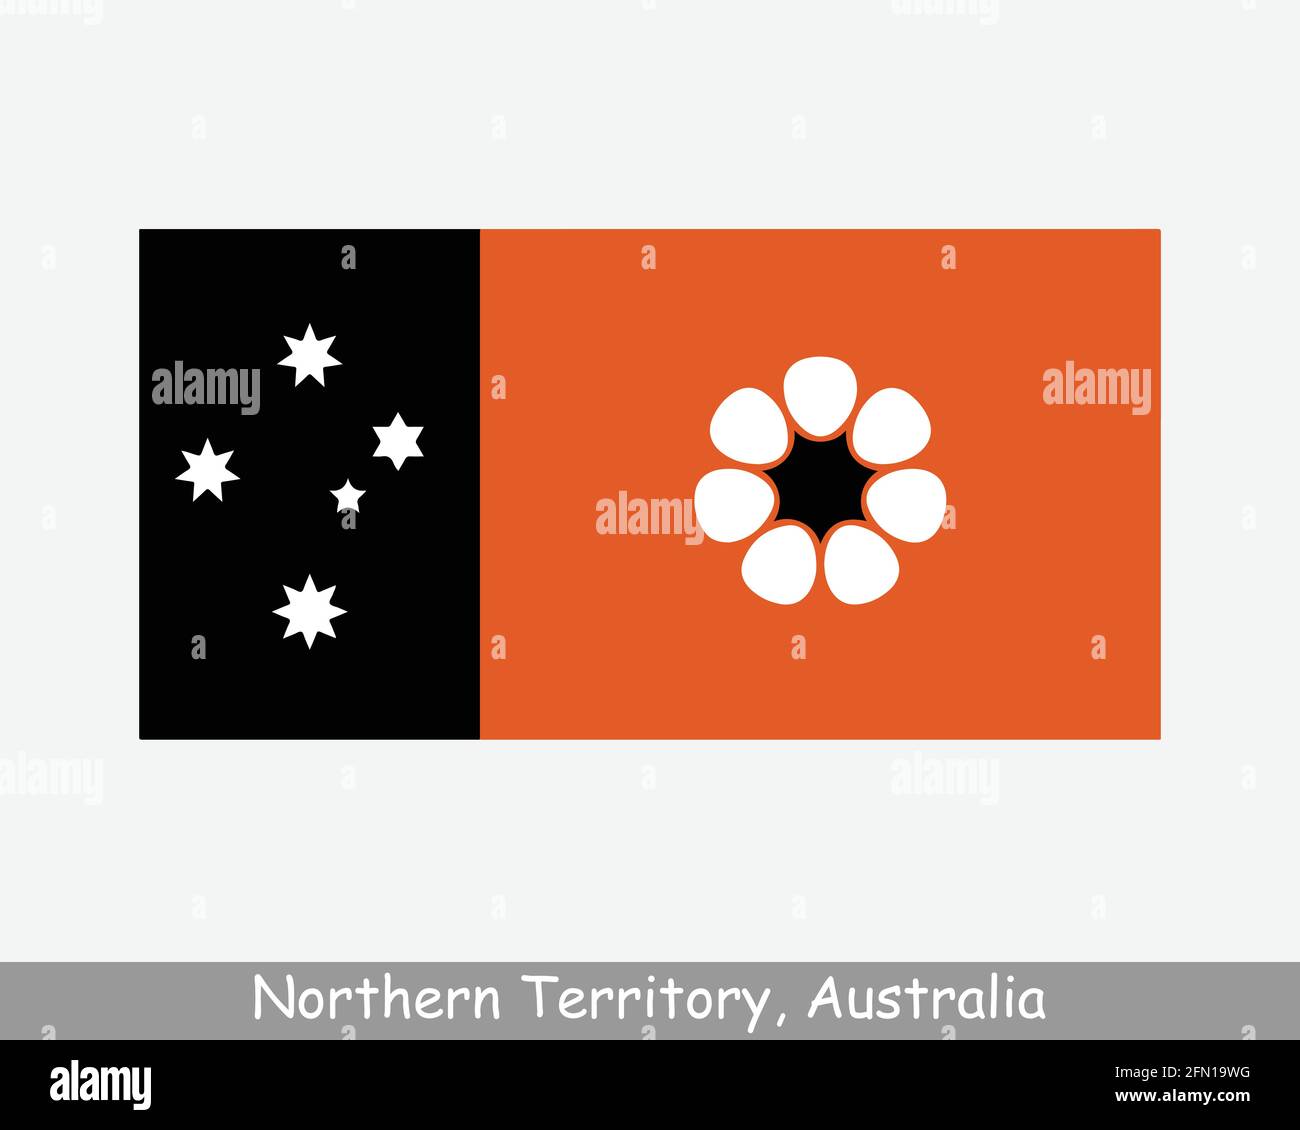 Flagge Des Northern Territory Australia. Flagge von NT, AU. Australisches Territorialbanner. EPS-Vektorgrafik Datei ausschneiden Stock Vektor